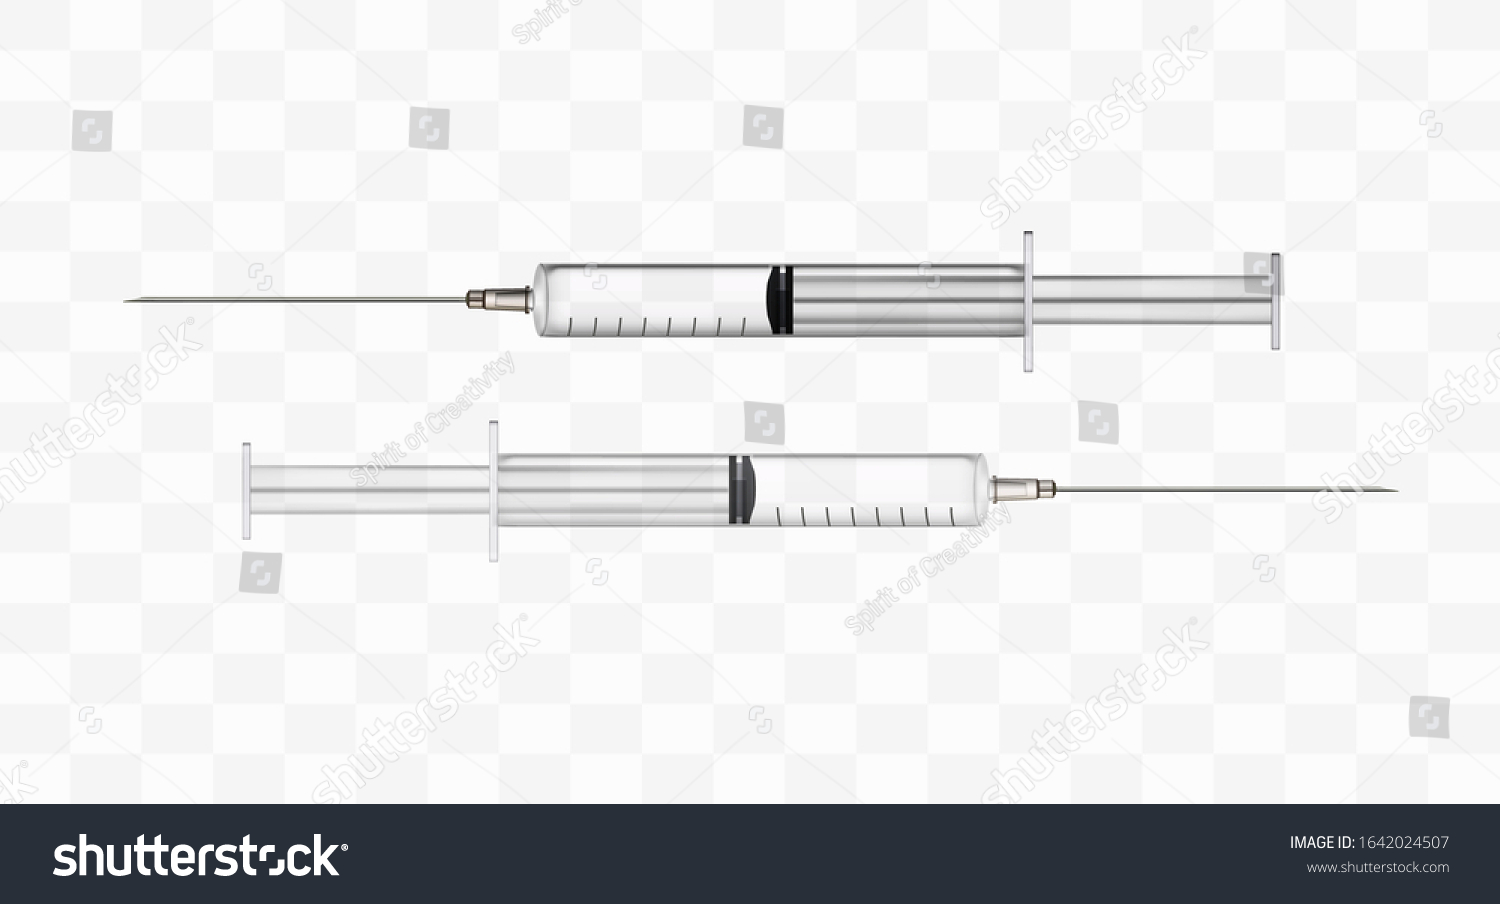 Syringe. Realistic. 3d. Vector stock illustration. Medical syringe on white background. Isolated. #1642024507